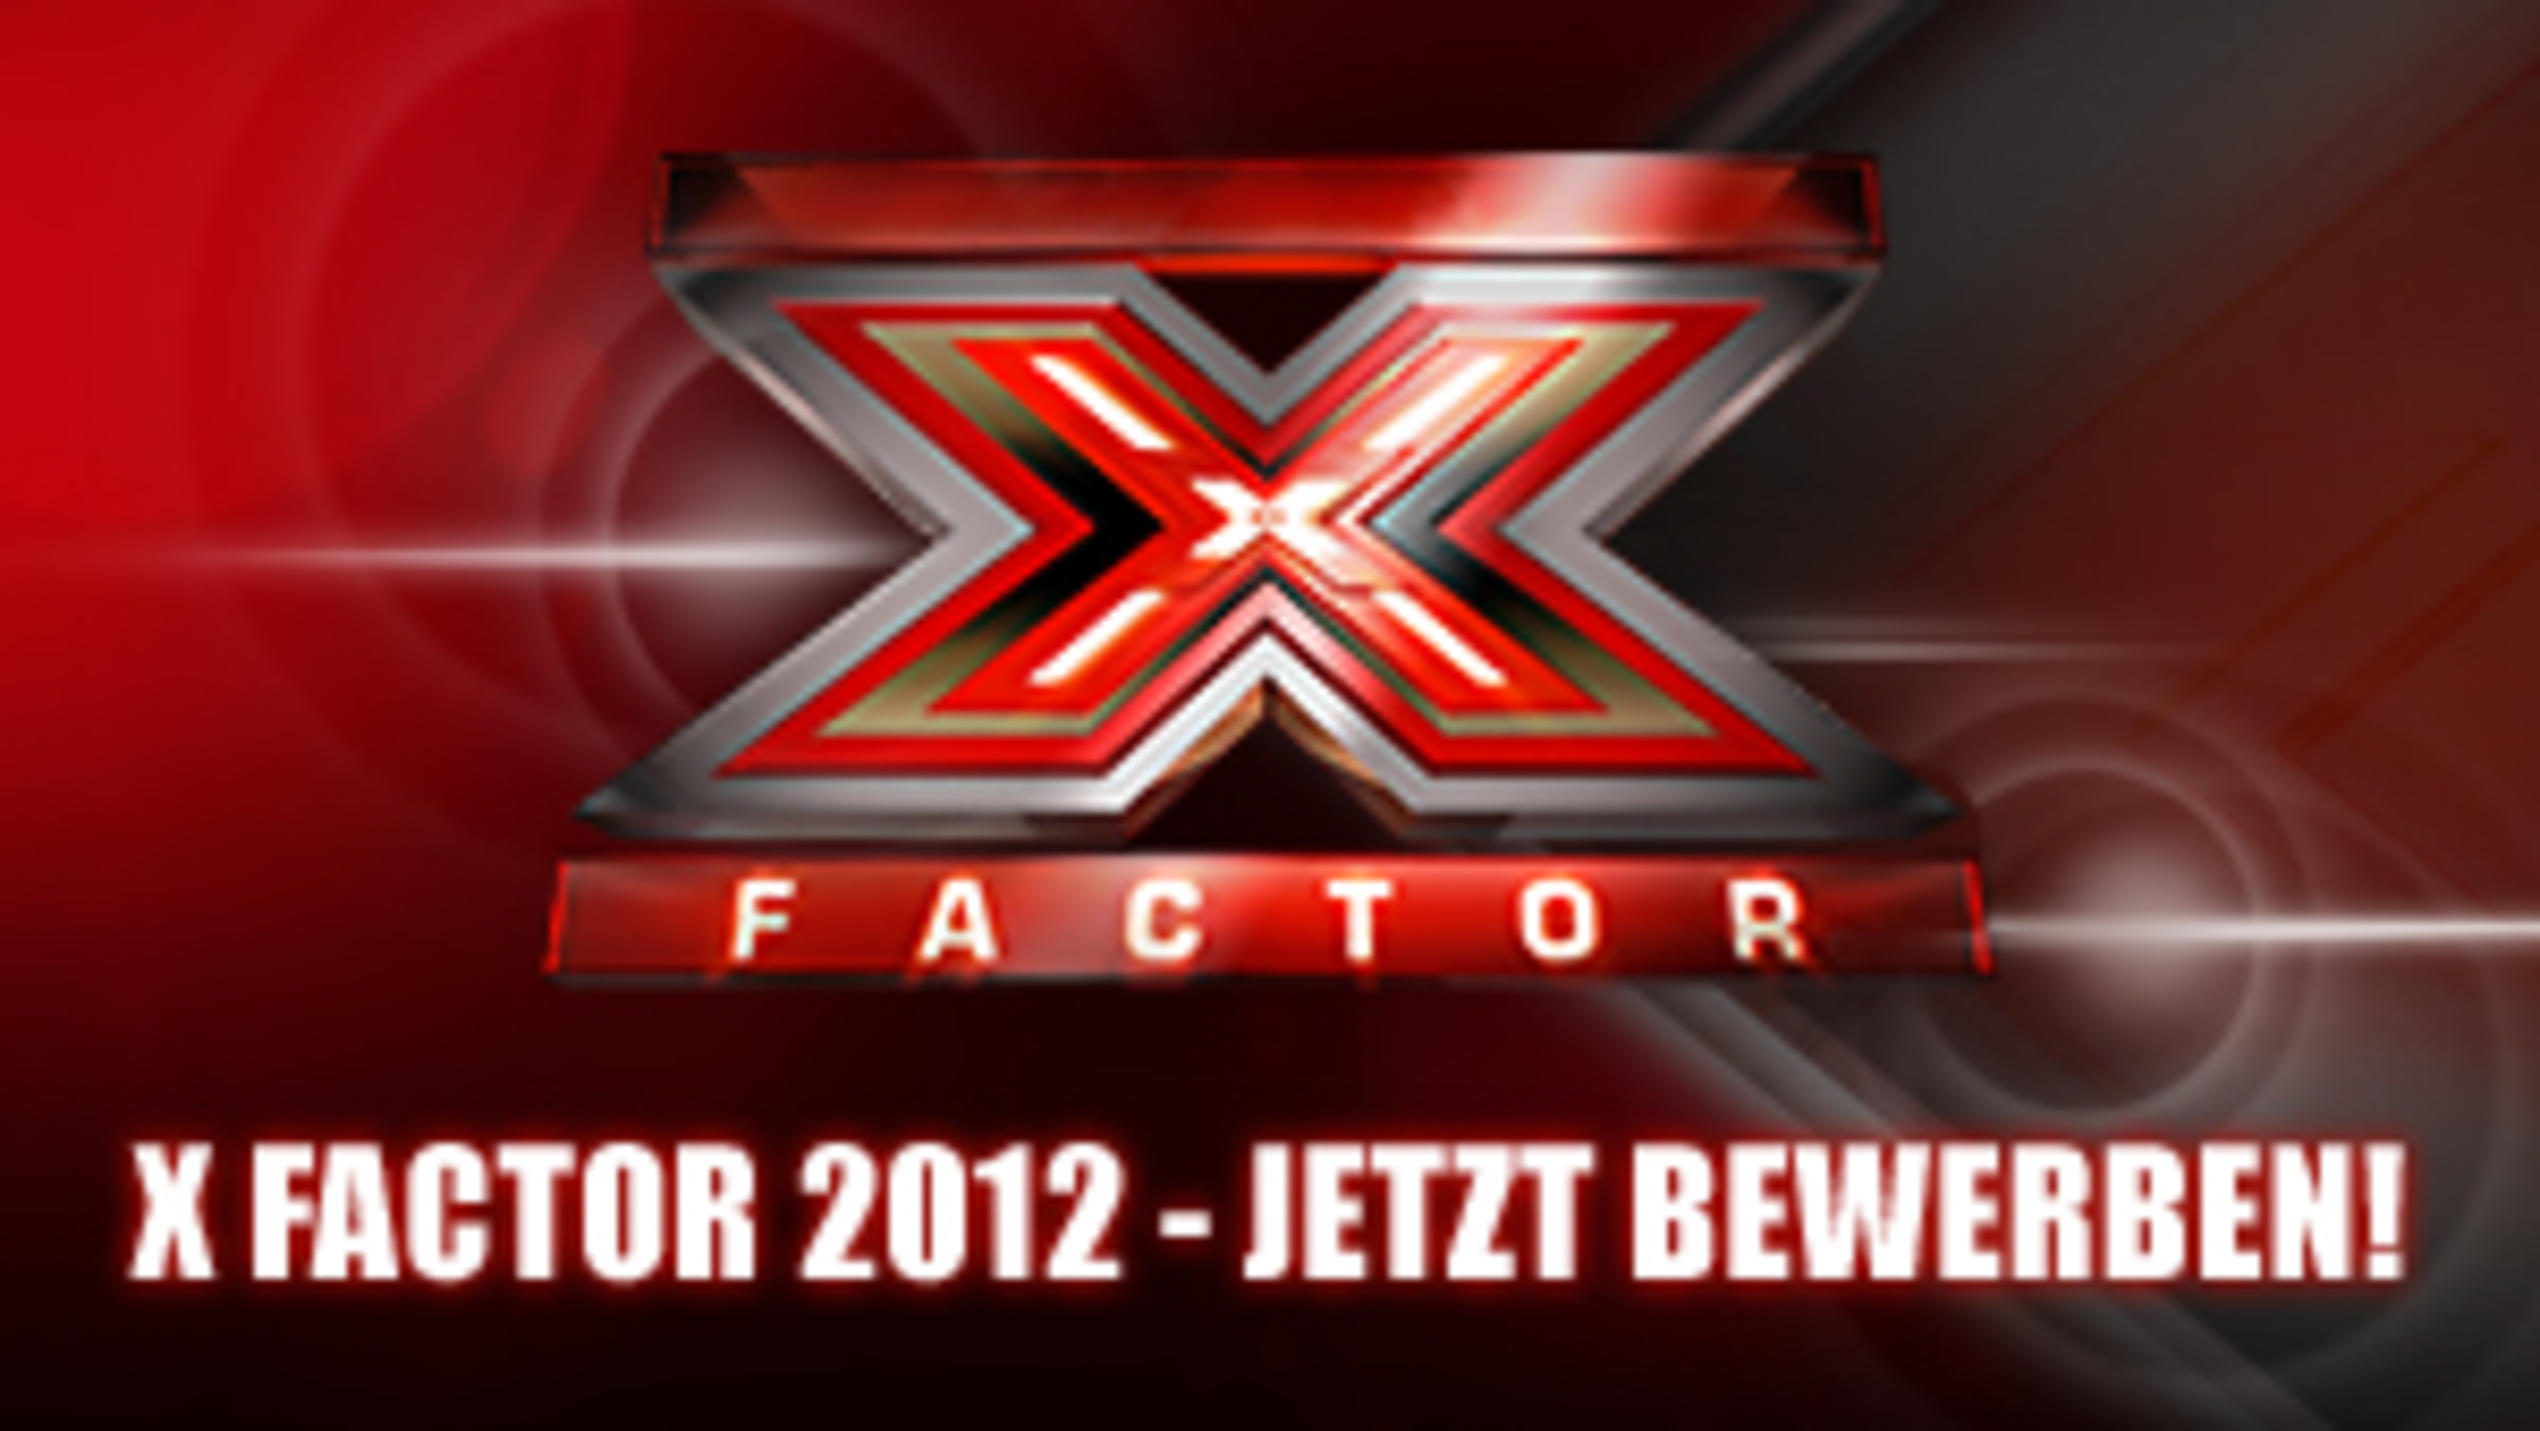 Die dritte Staffel - bewerbt euch für X Factor 2012!